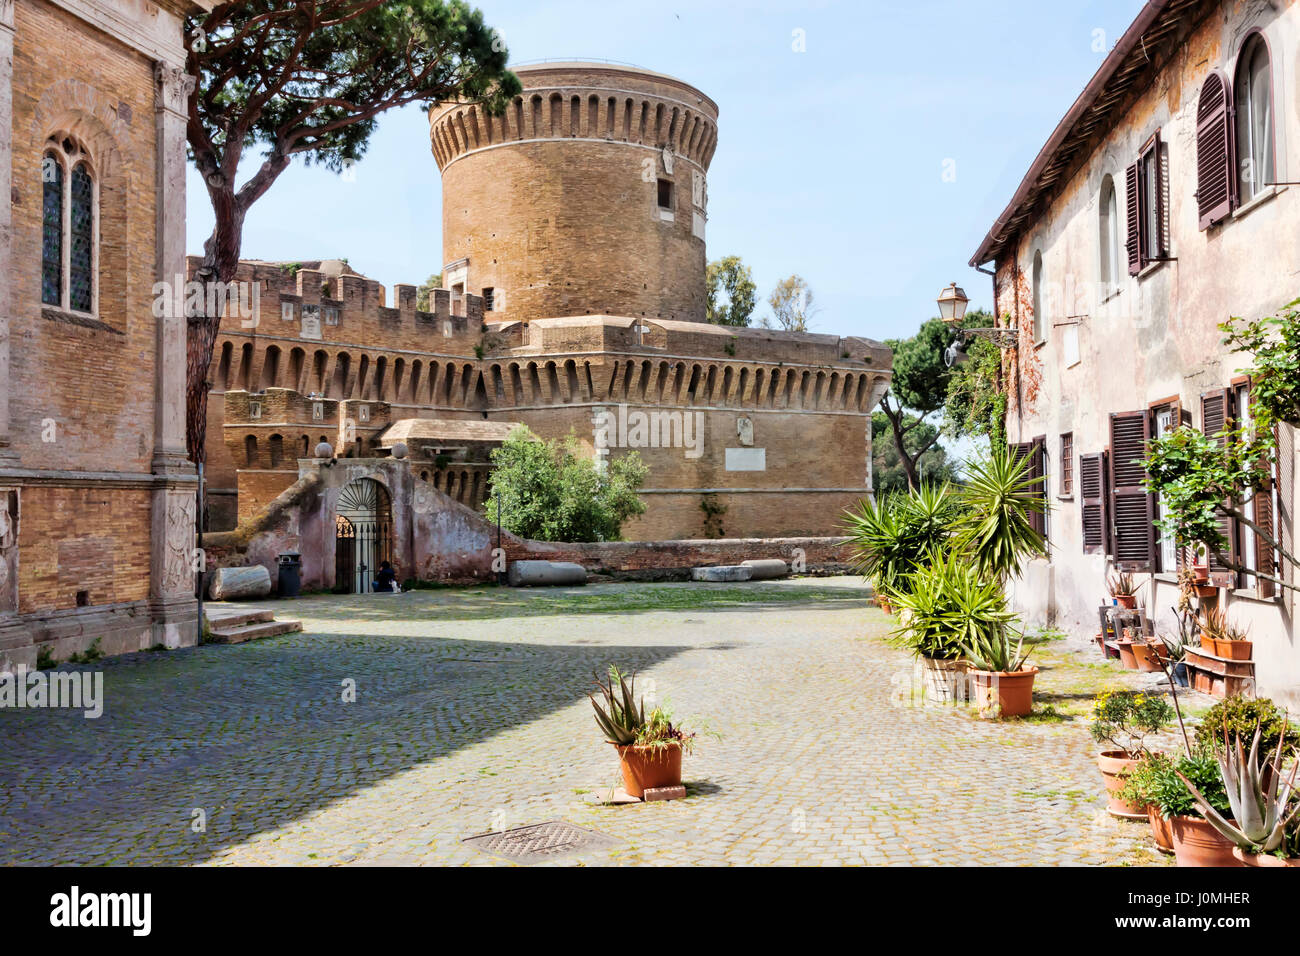 Scorcio del borgo medievale di Ostia Antica - Italia Foto Stock